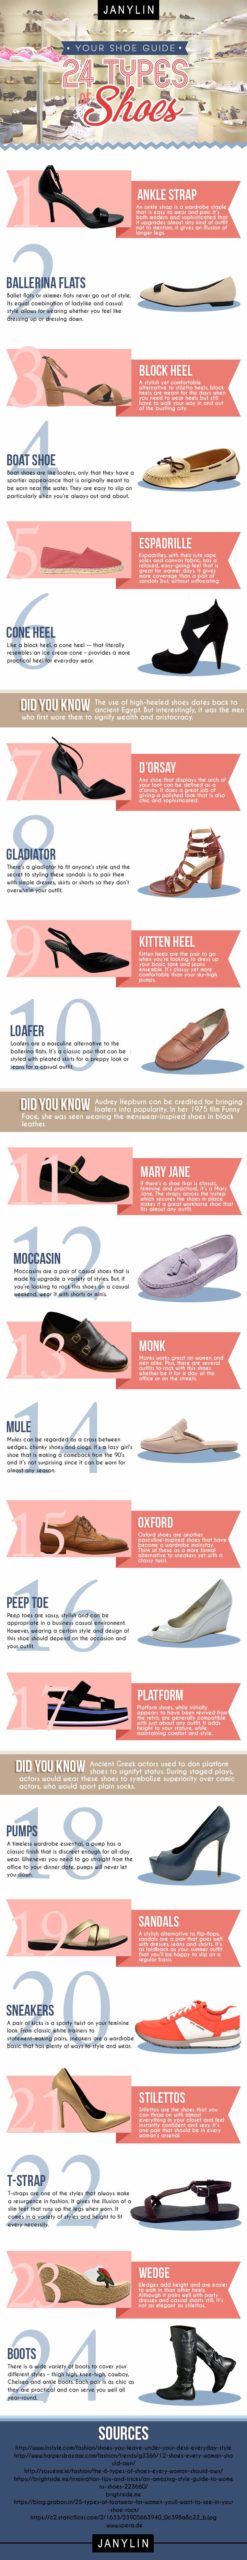 Shoe-Guide